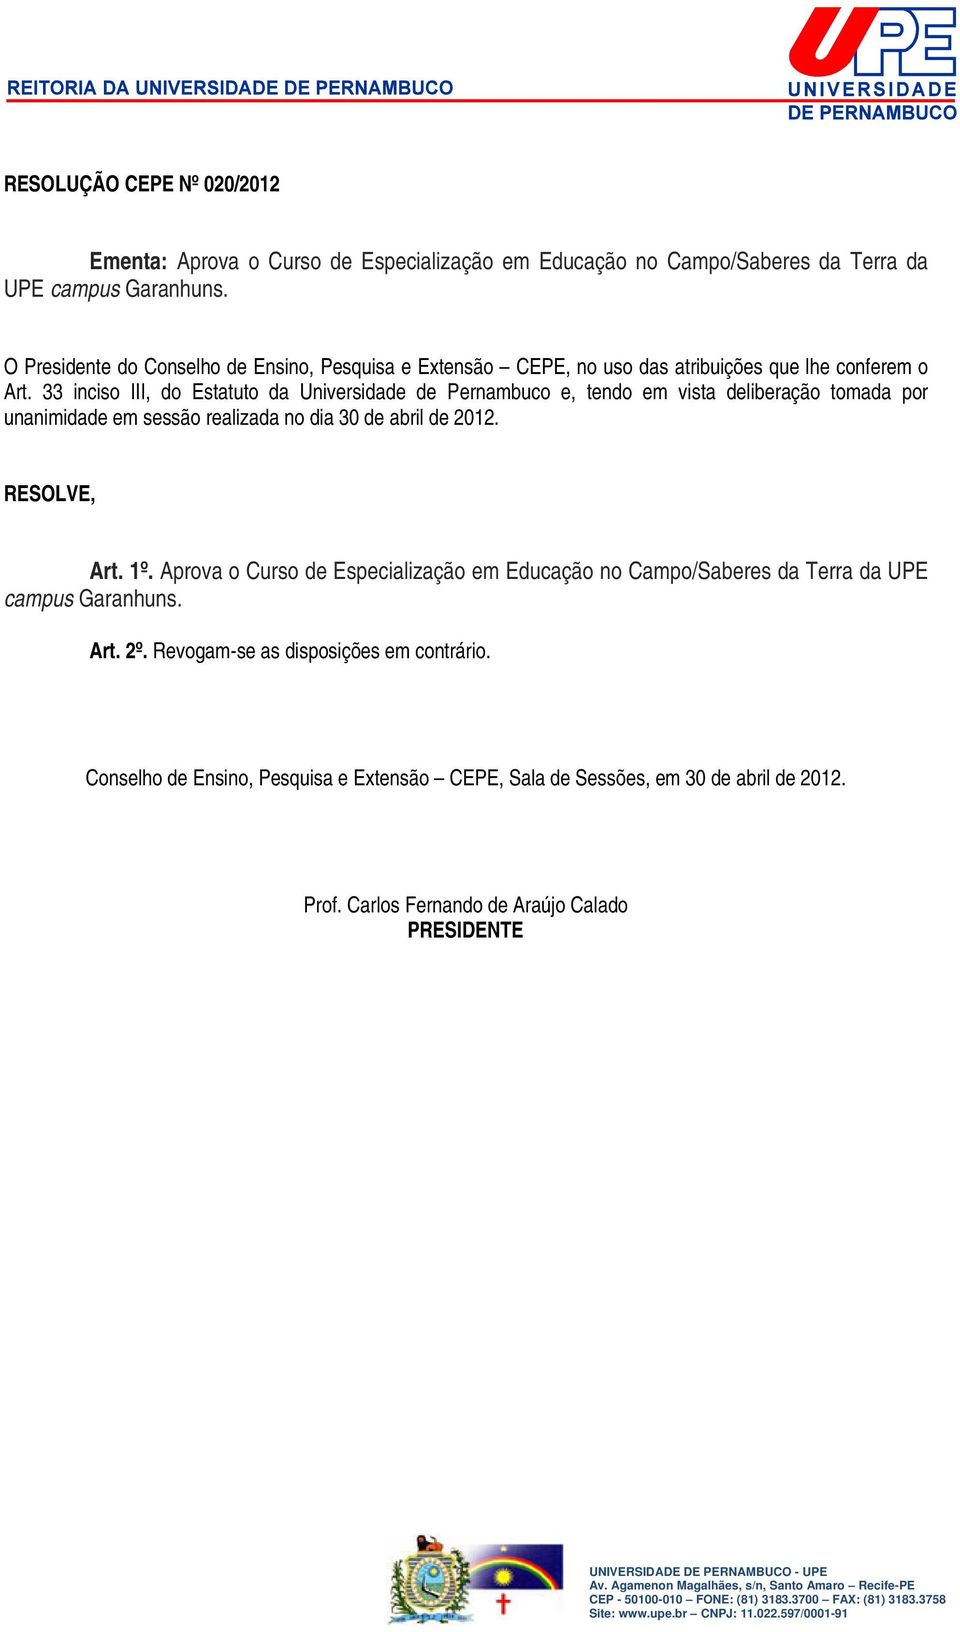 33 inciso III, do Estatuto da Universidade de Pernambuco e, tendo em vista deliberação tomada por unanimidade em sessão realizada no dia 30 de